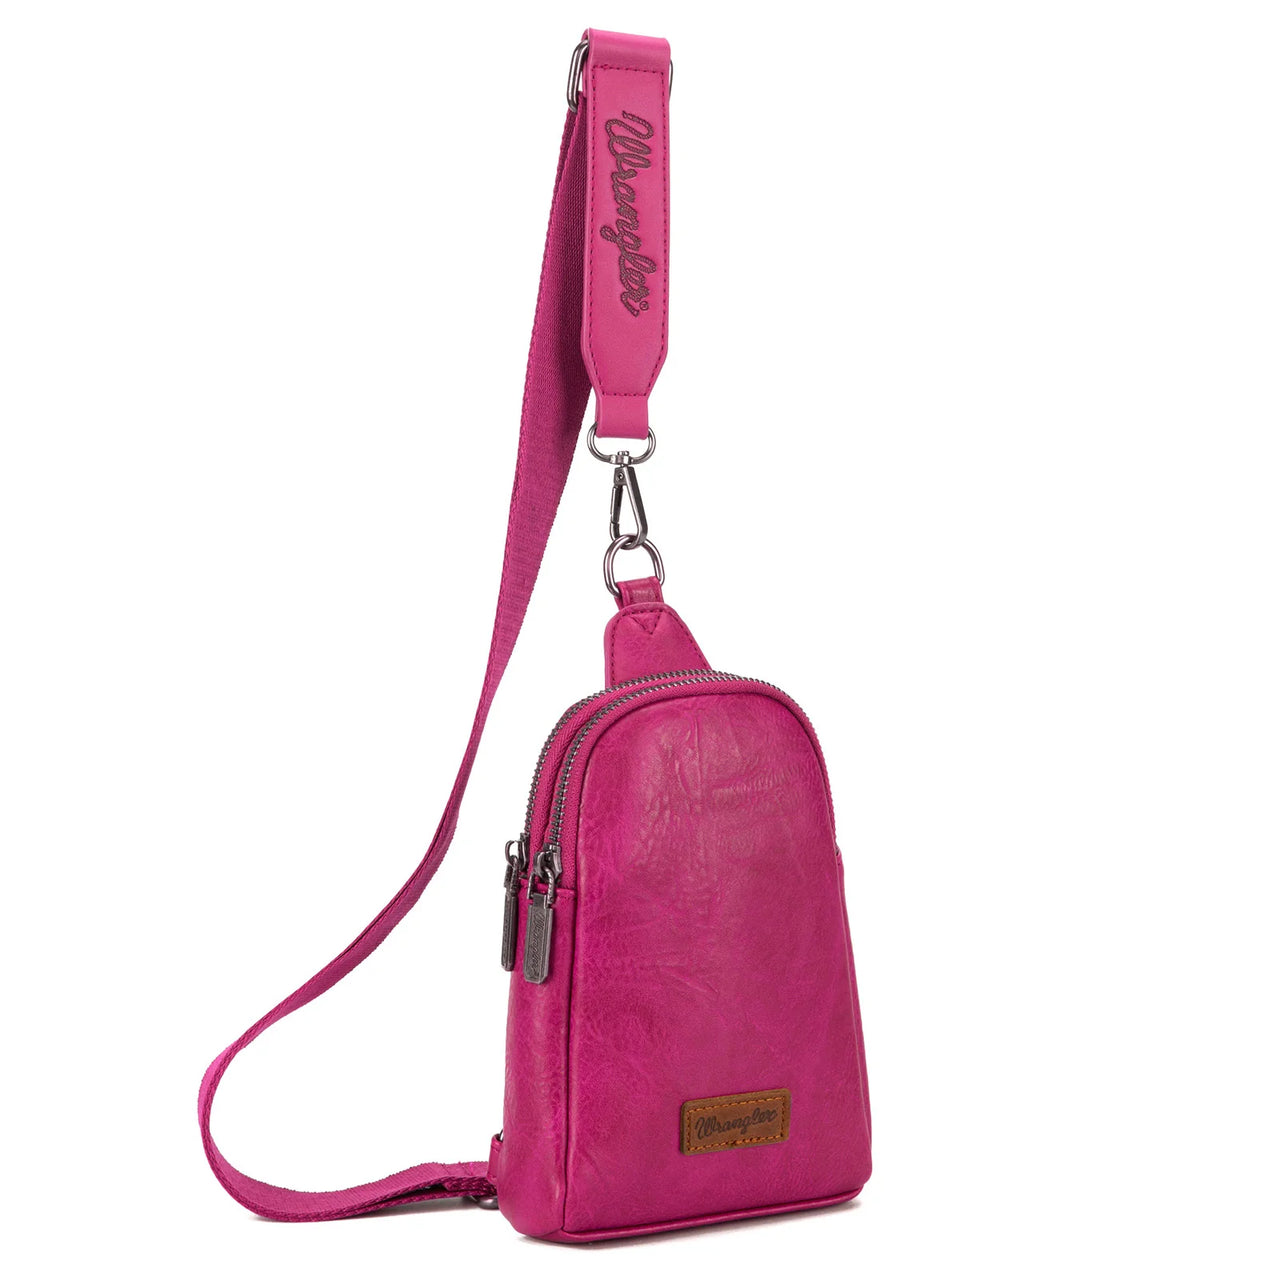 Wrangler Women's Sling Bag/Crossbody/Chest Bag - Hot Pink